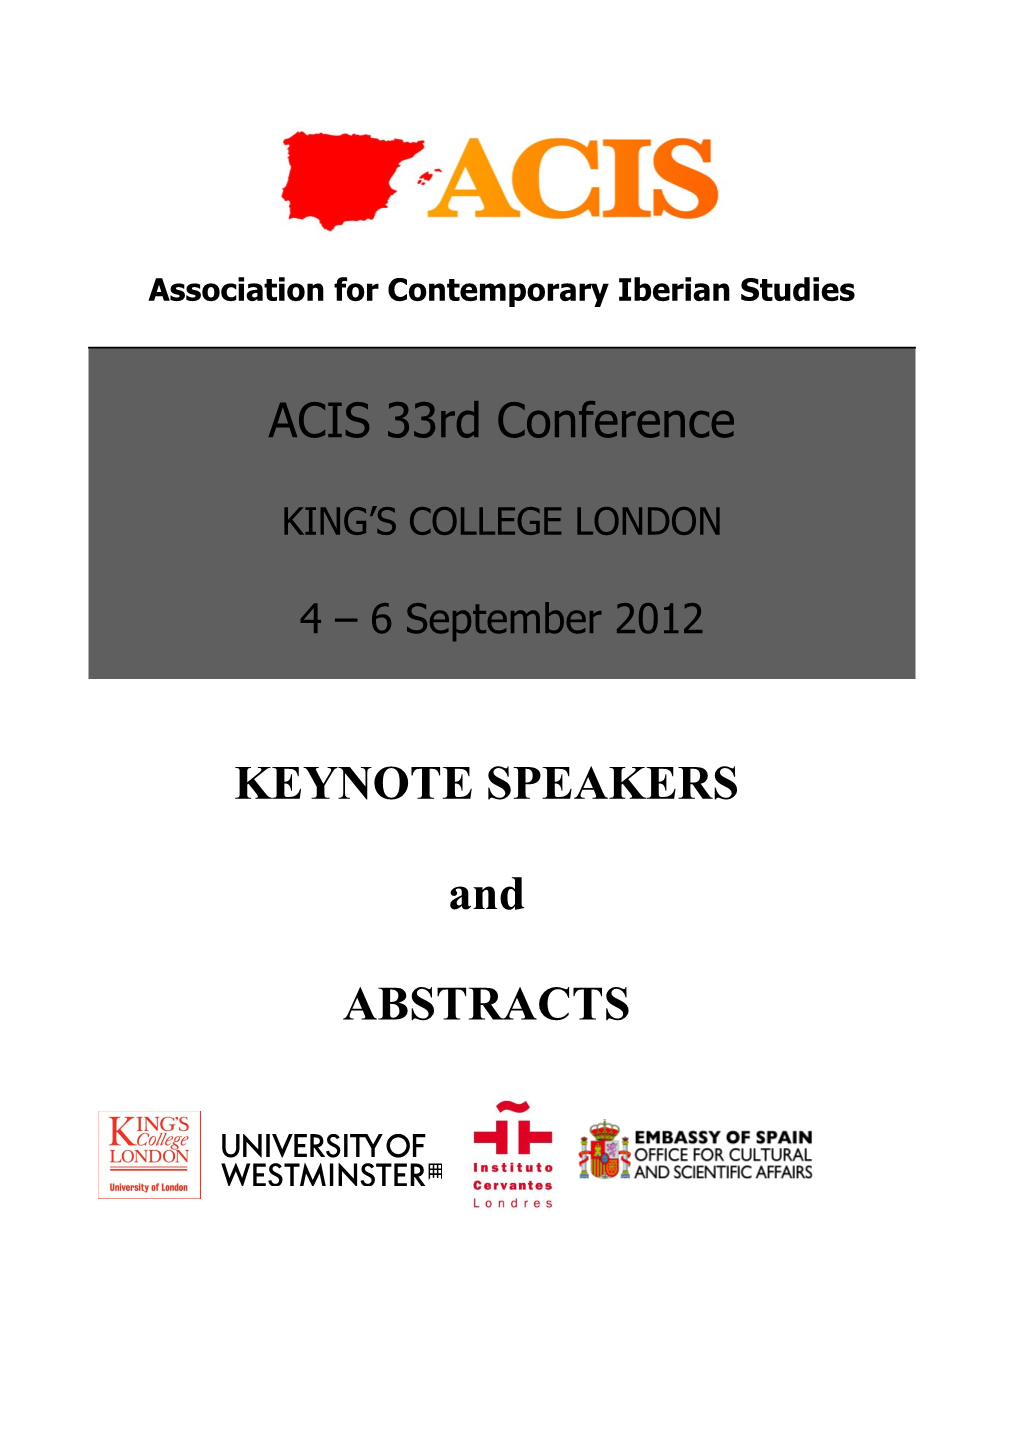 Keynote Speakers at ACIS 2012